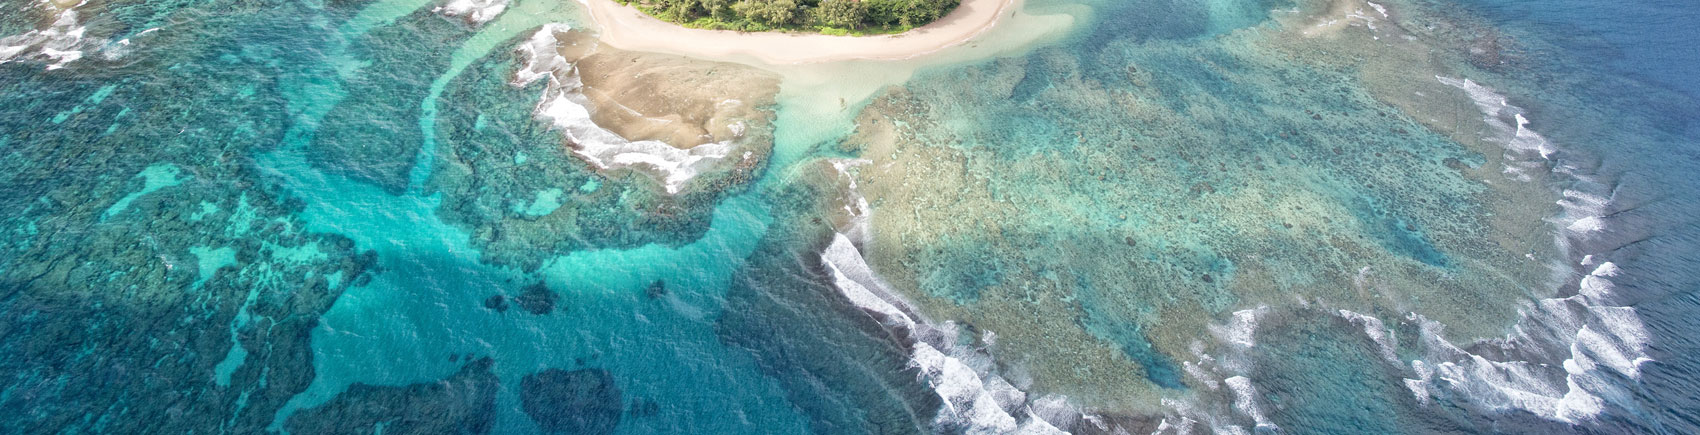 Aerial view of shores off Kauai